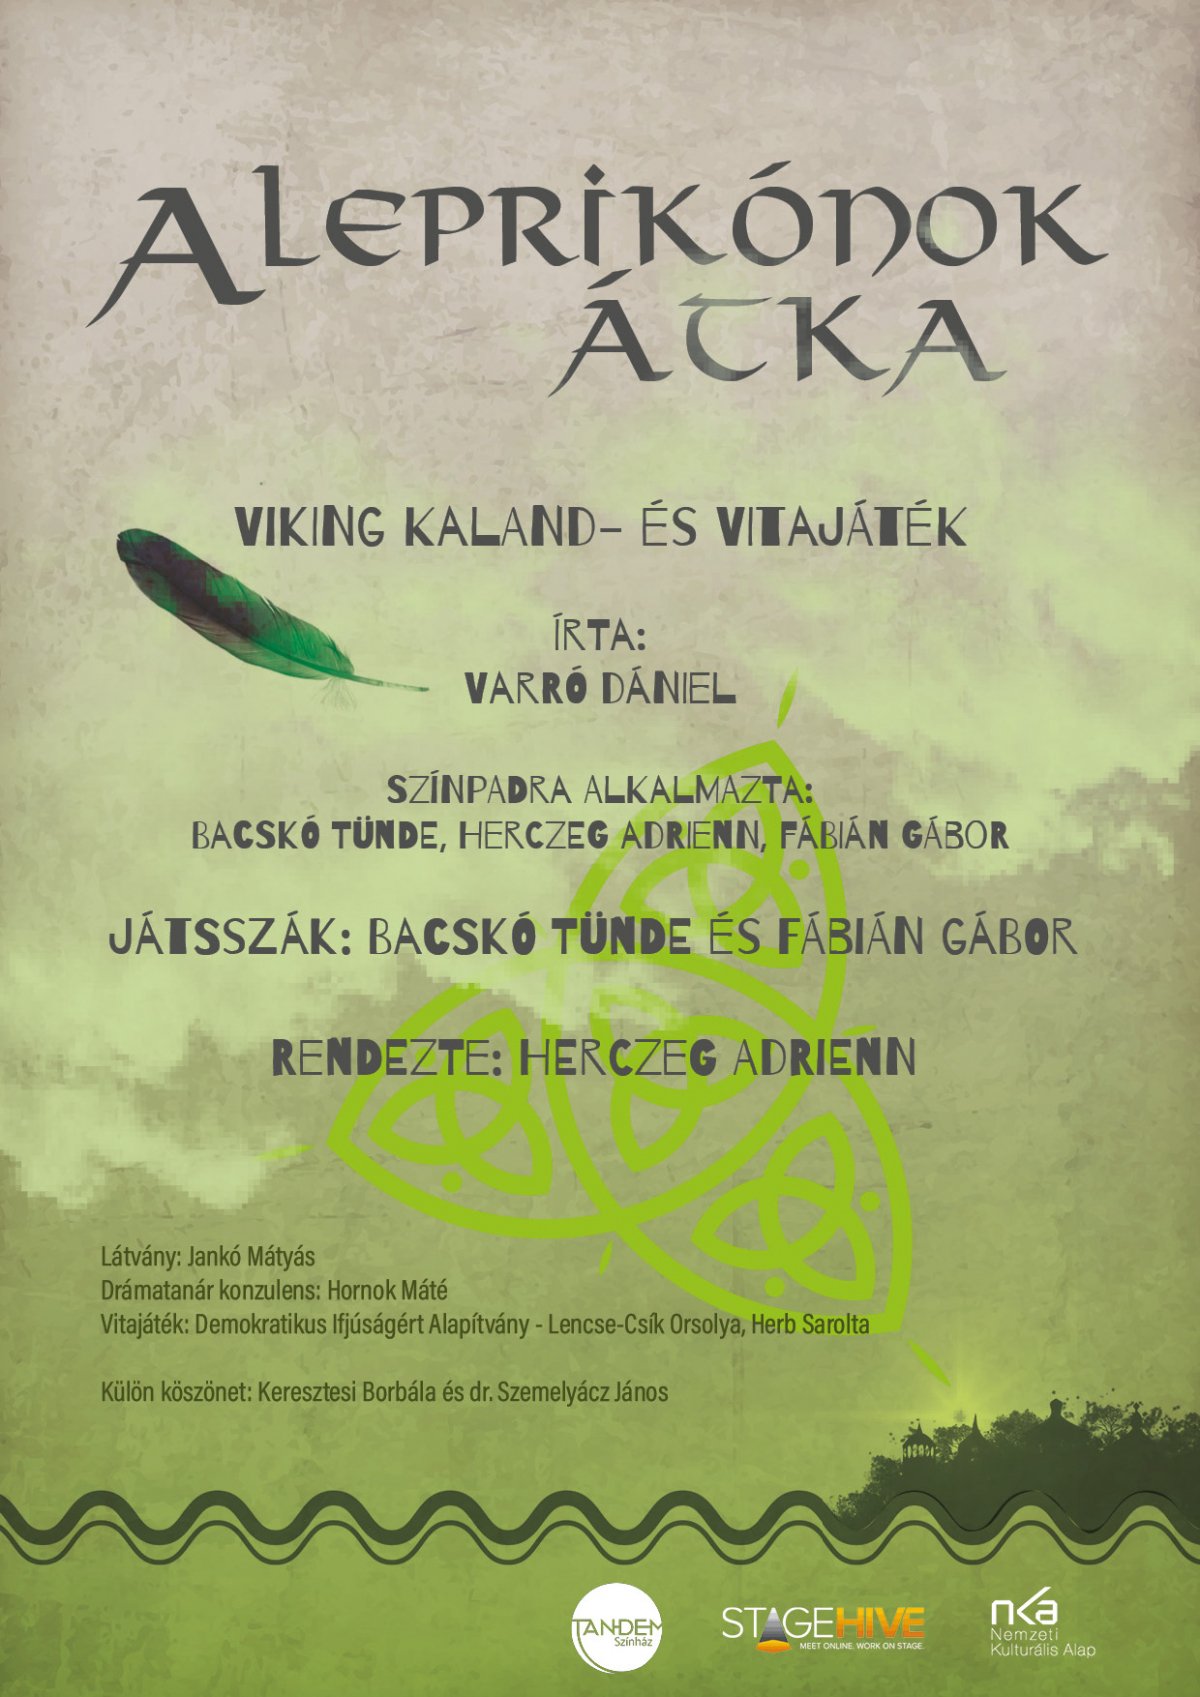 A leprikónok átka: viking kaland- és vitajáték a Reök-palotában